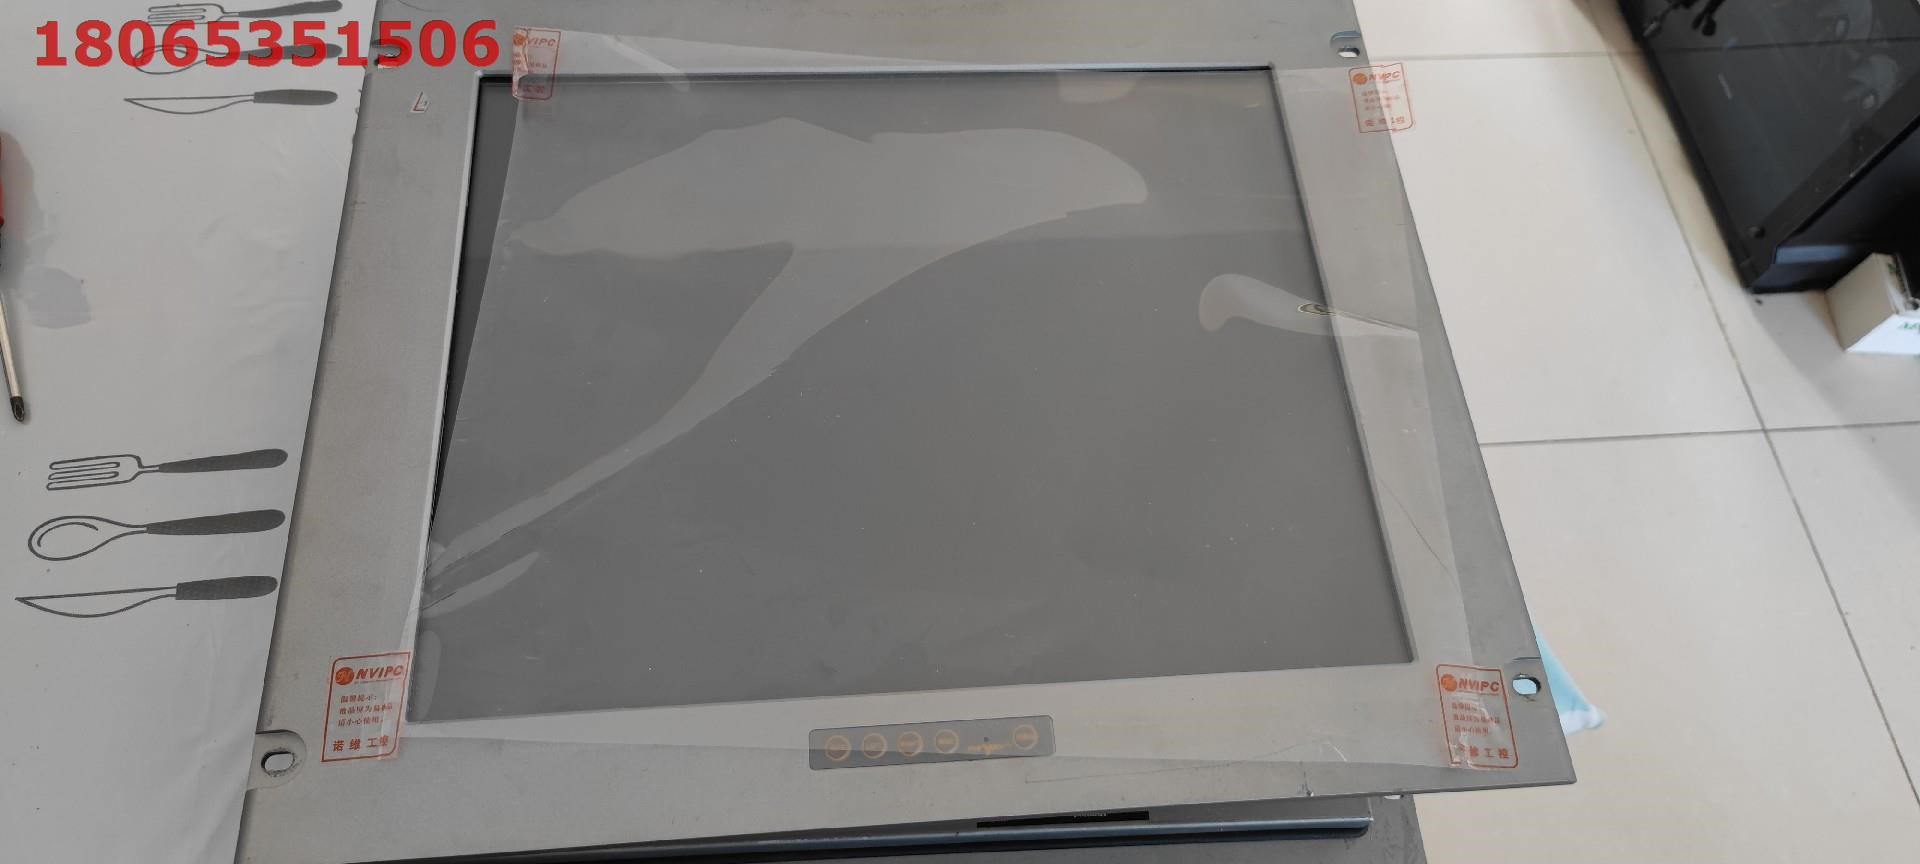 北京现货诺维工业显示器19寸正屏嵌入式可改触摸屏全铝外壳开孔